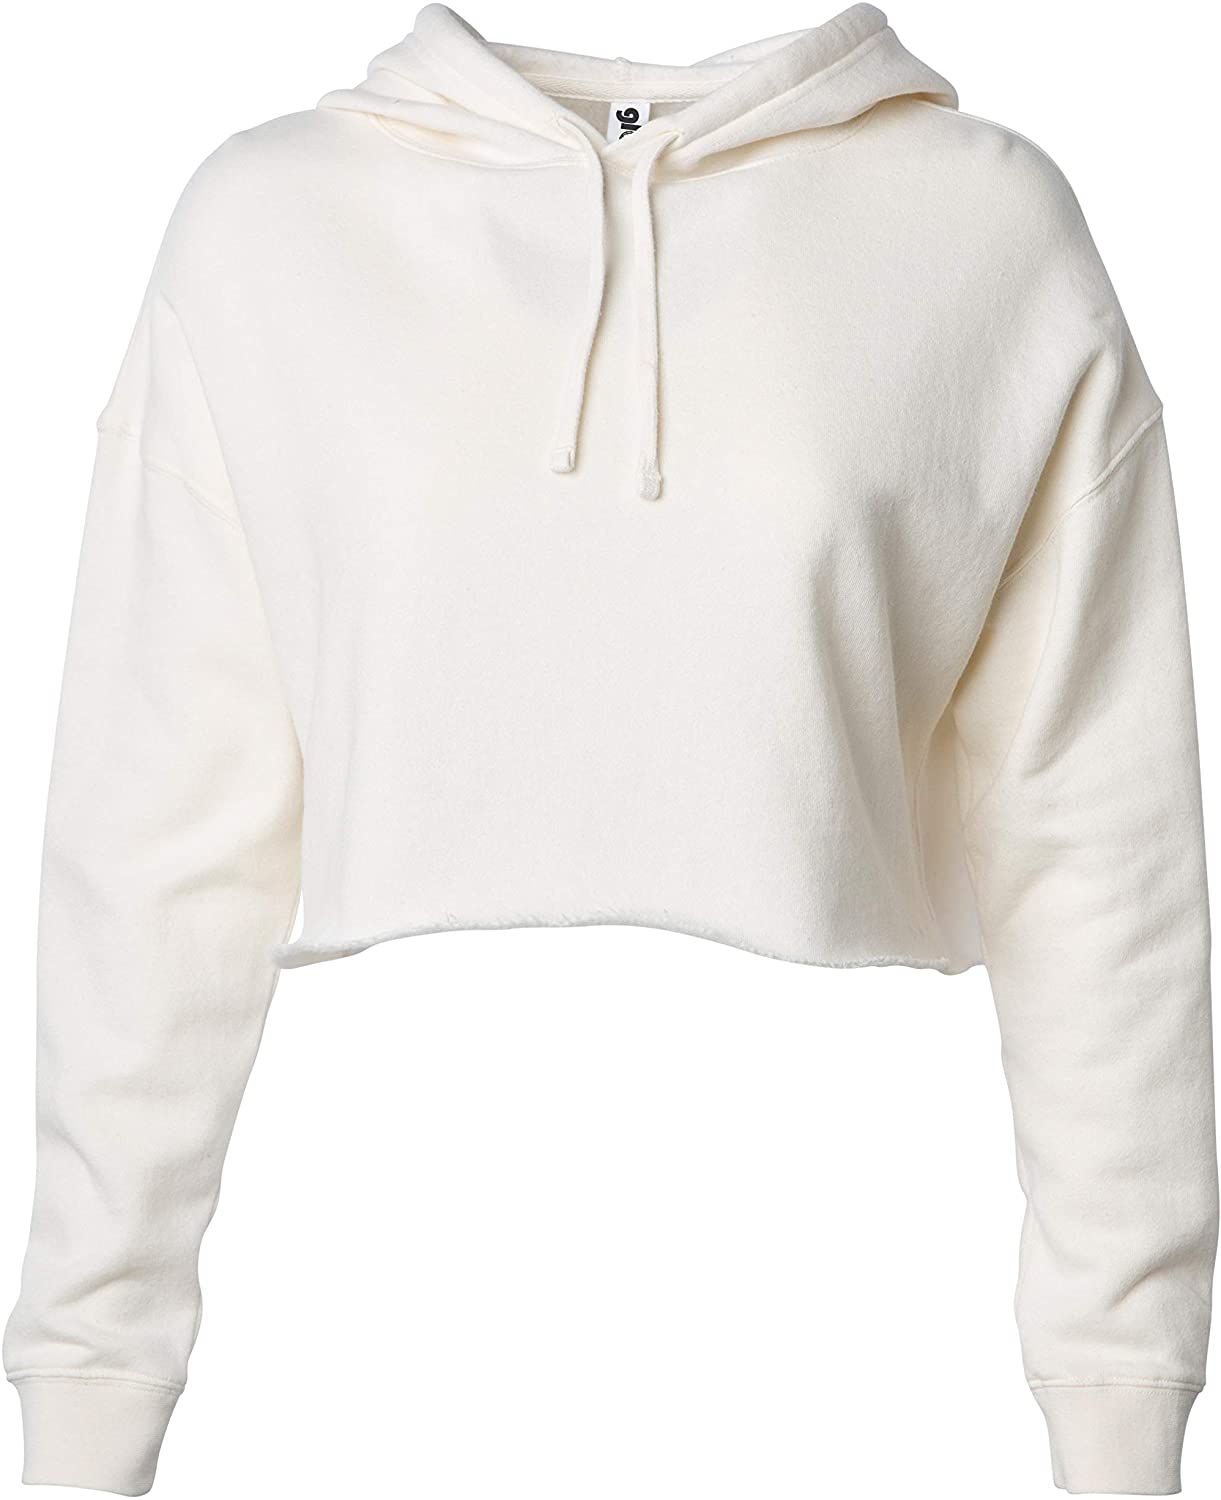 Oiumov Sweatshirts for Women Crop Hoodies Womens Zip Up Long Sleeve Pullover Cropped Hoodies Tops Solid Teen Girls 